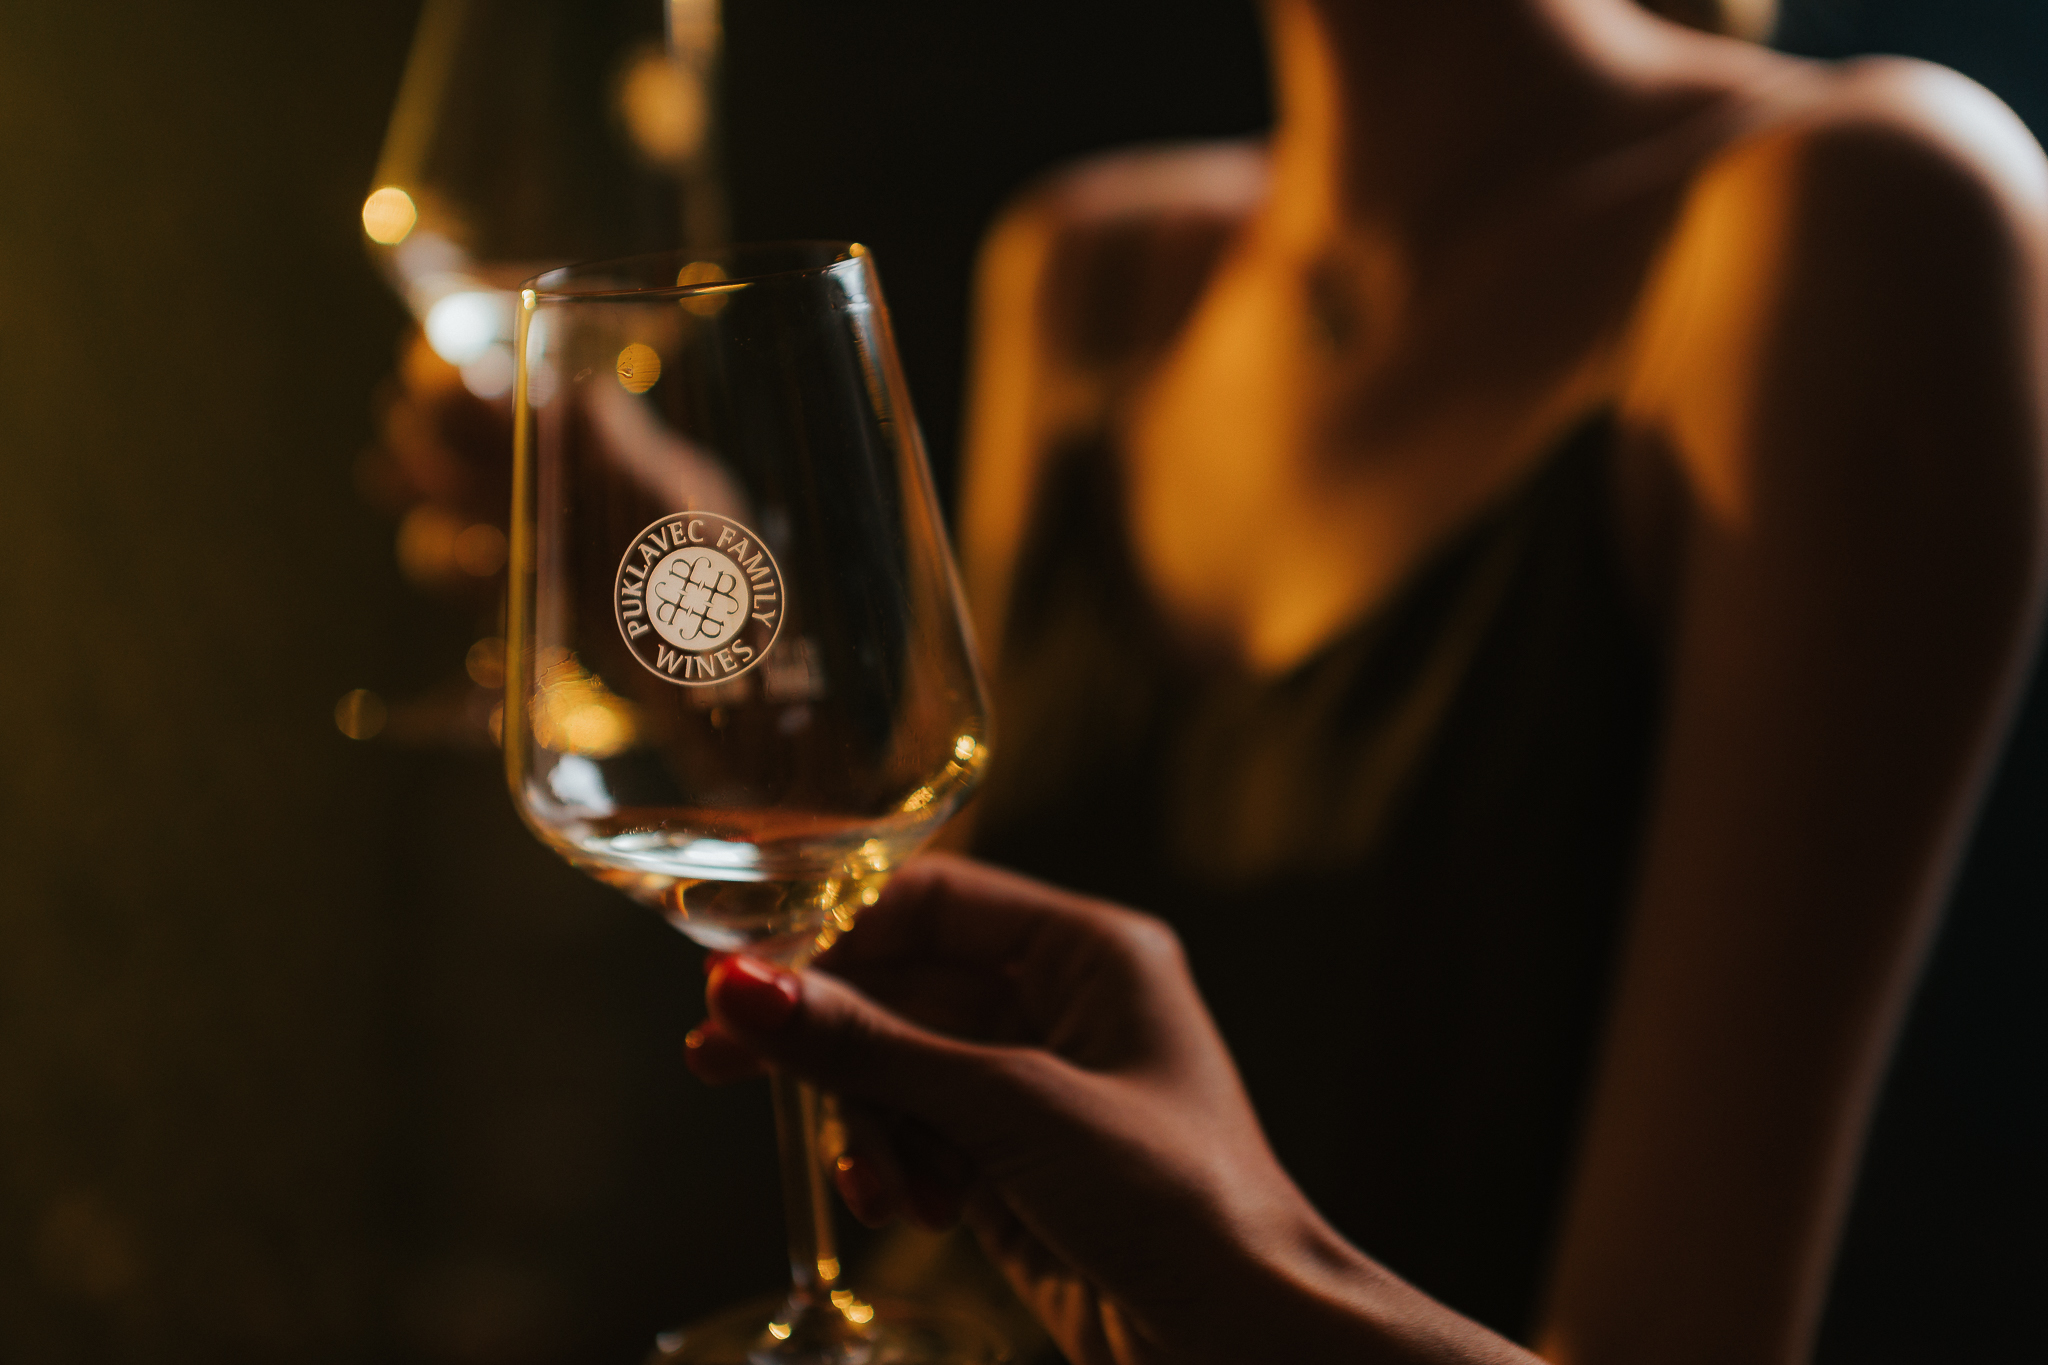 Ormoški vinski podrum Puklavec Family Wines i treću je uzastopnu godinu osvojio prestižnu titulu Vinar godine